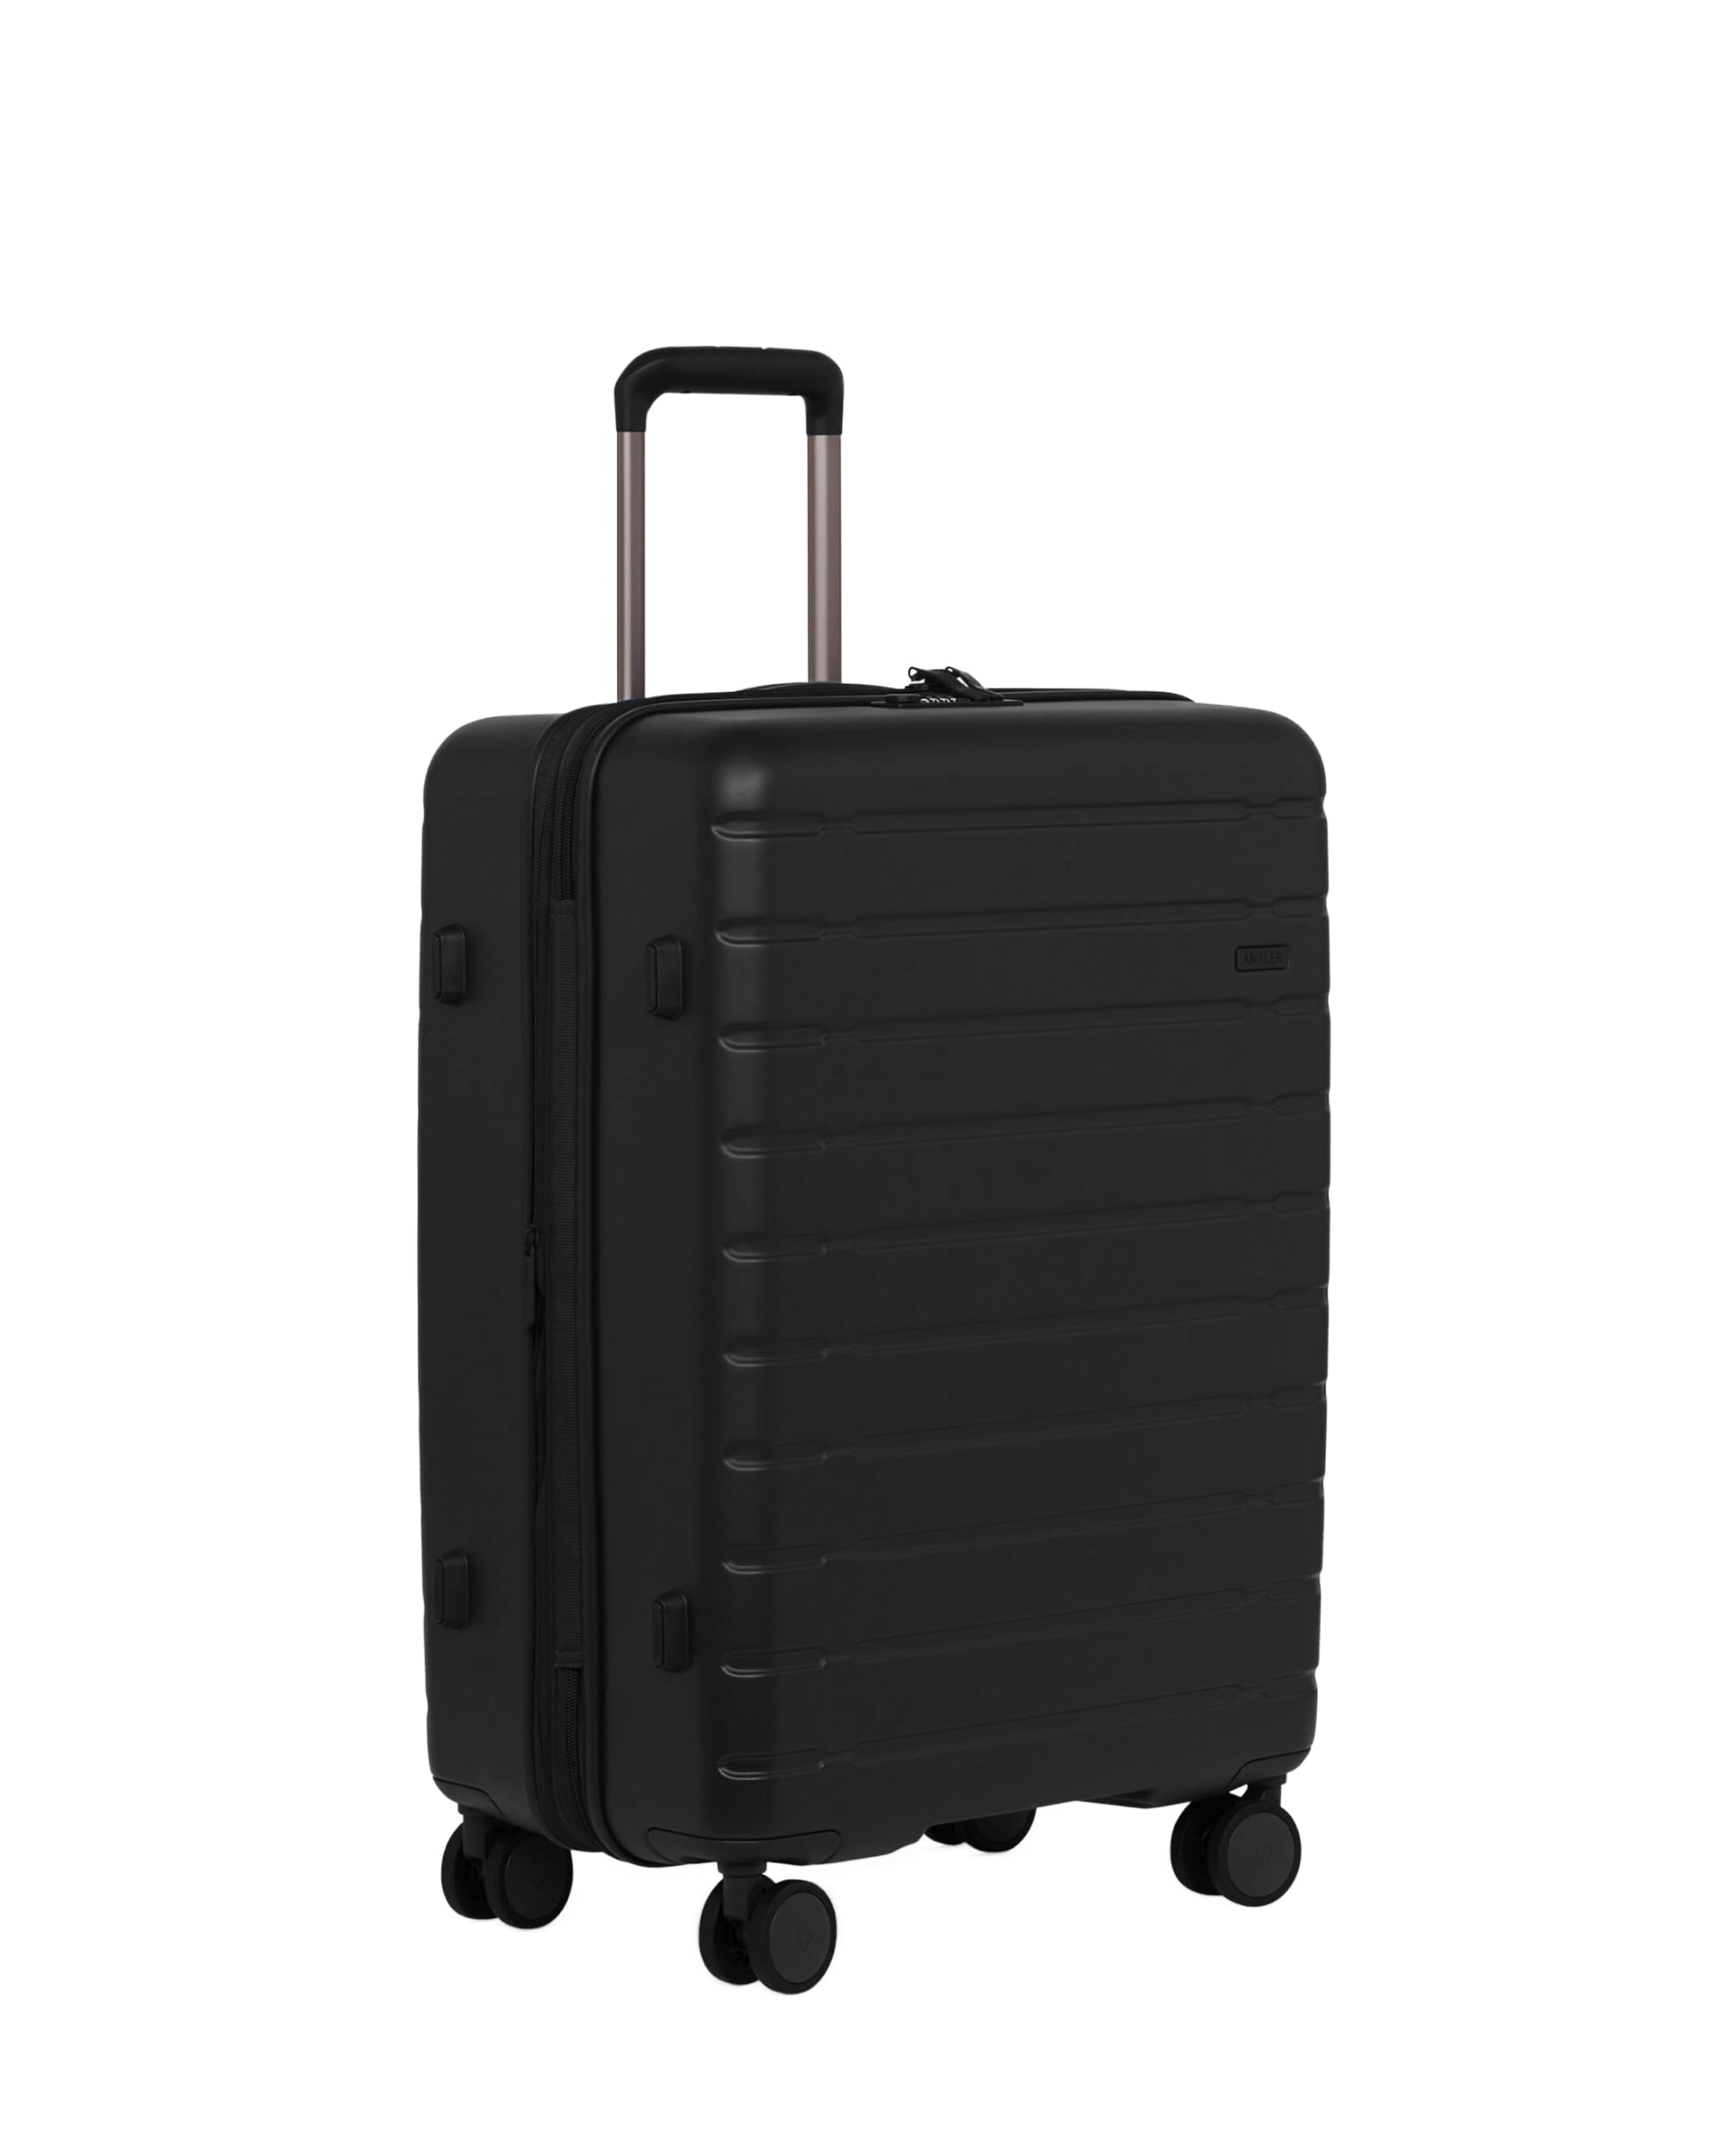 View Antler Stamford 20 Medium Suitcase In Midnight Black Size 295cm x 48cm x 683cm information